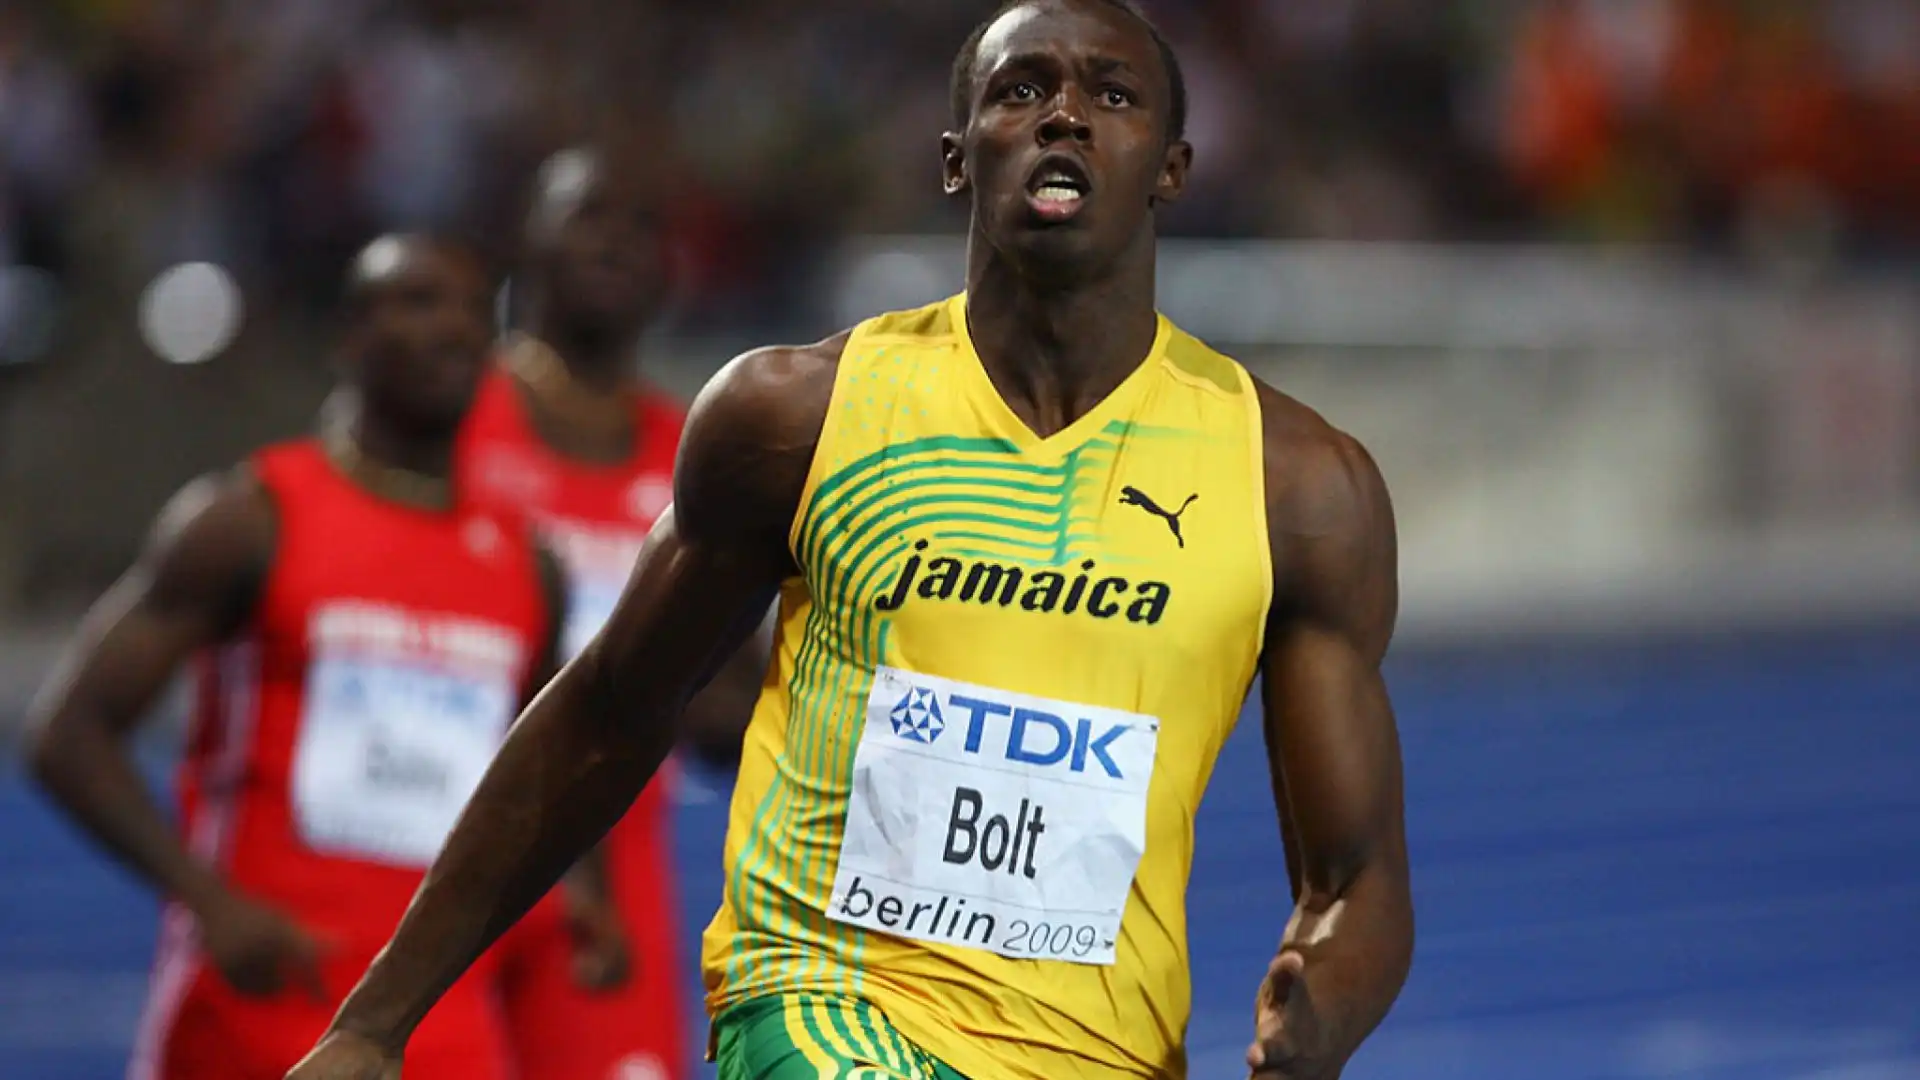 5- Usain Bolt